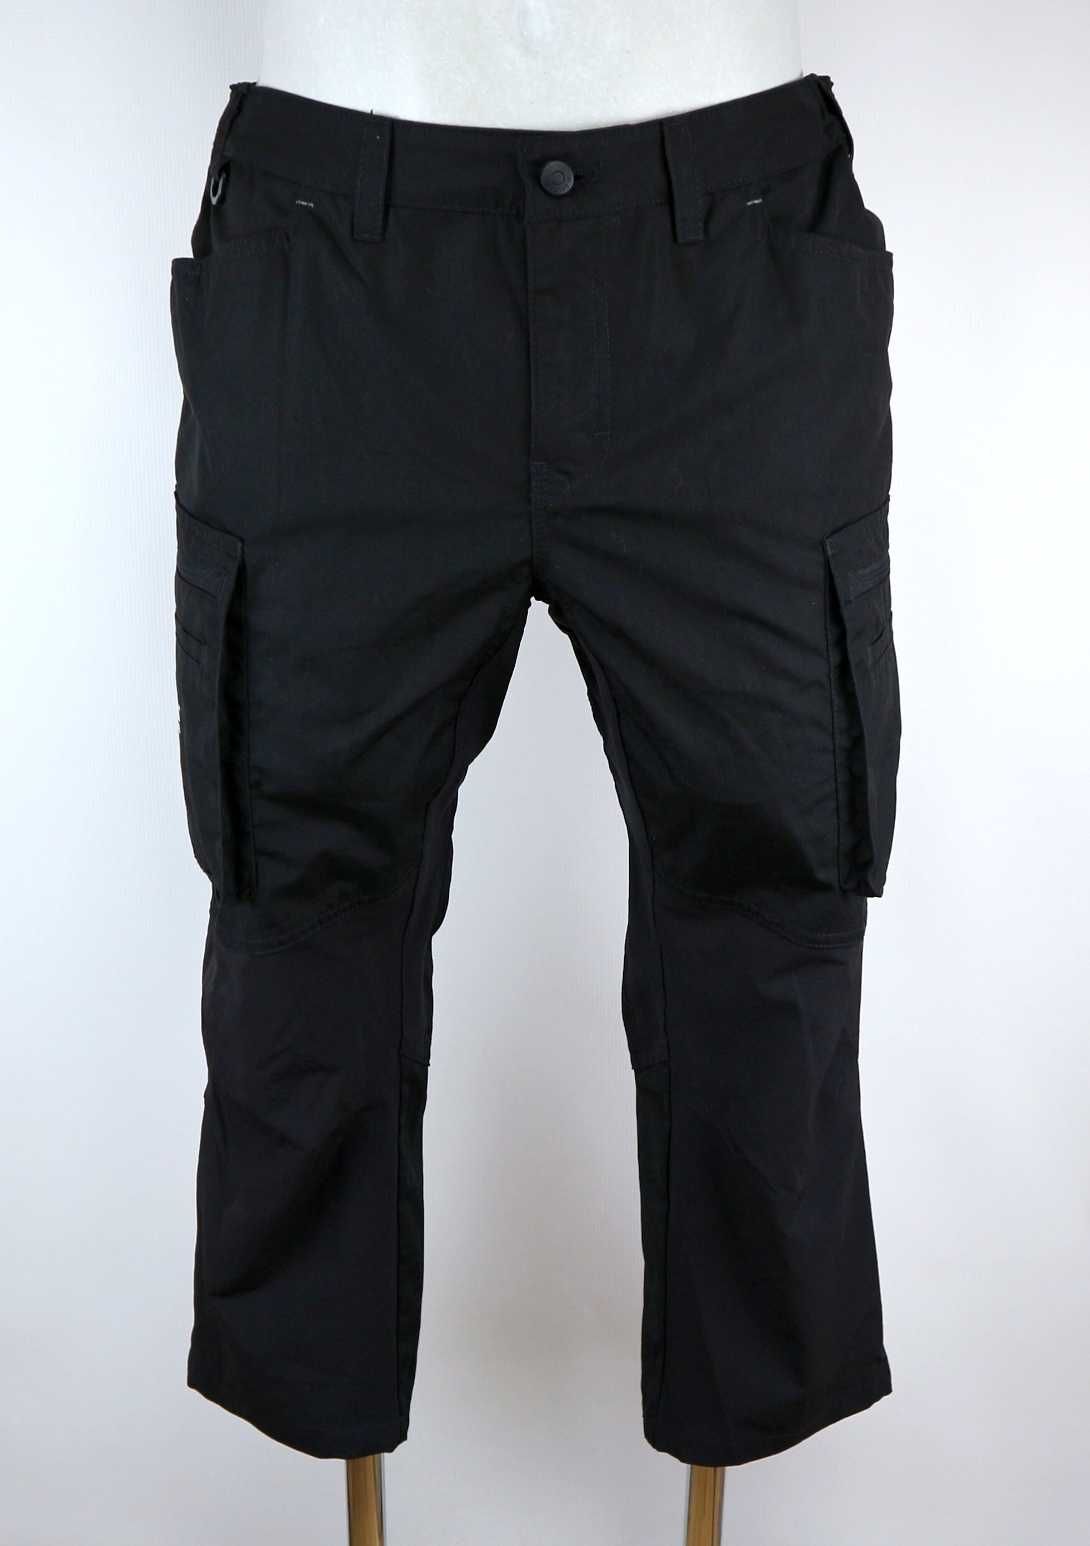 Blaklader damskie spodnie robocze piratki stretch 42 (XL)